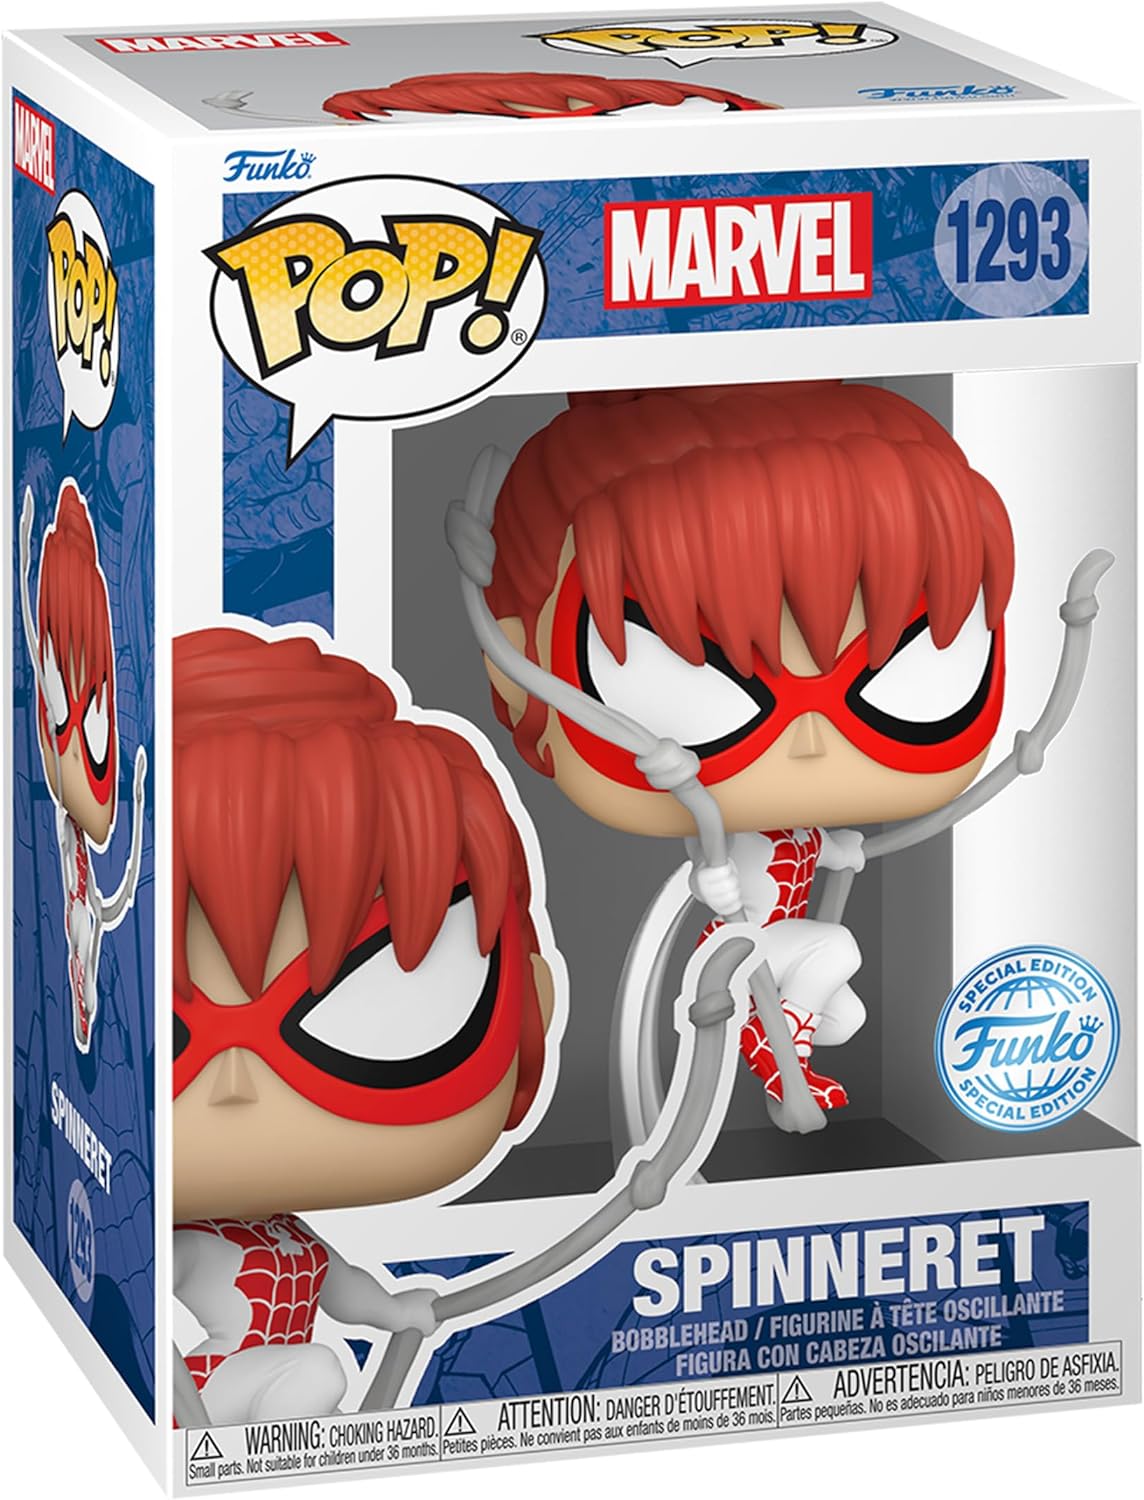 Pop! Vinyl/Spinneret: Spider-Man [Toy]